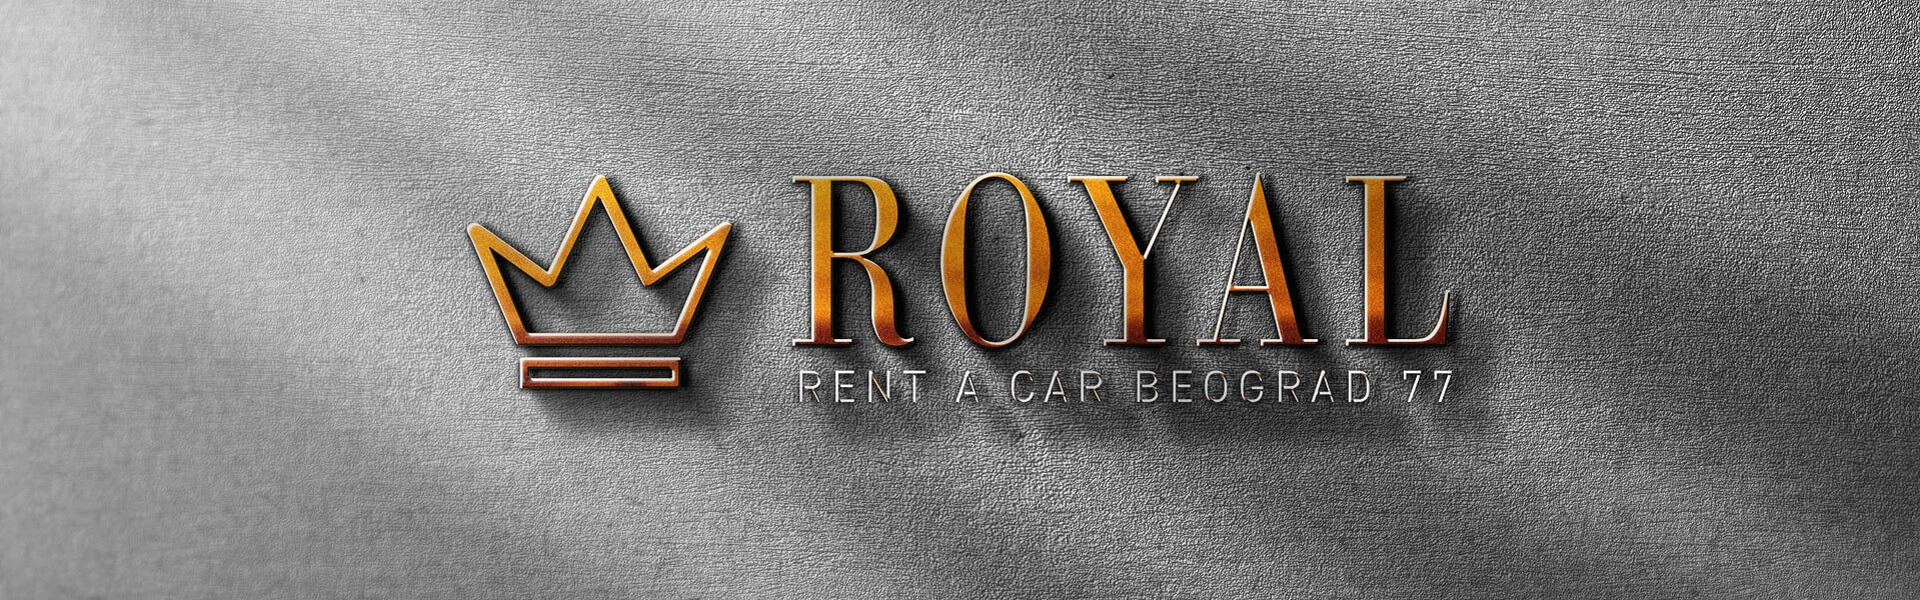 Ecoaqua | Rent a car Beograd Royal